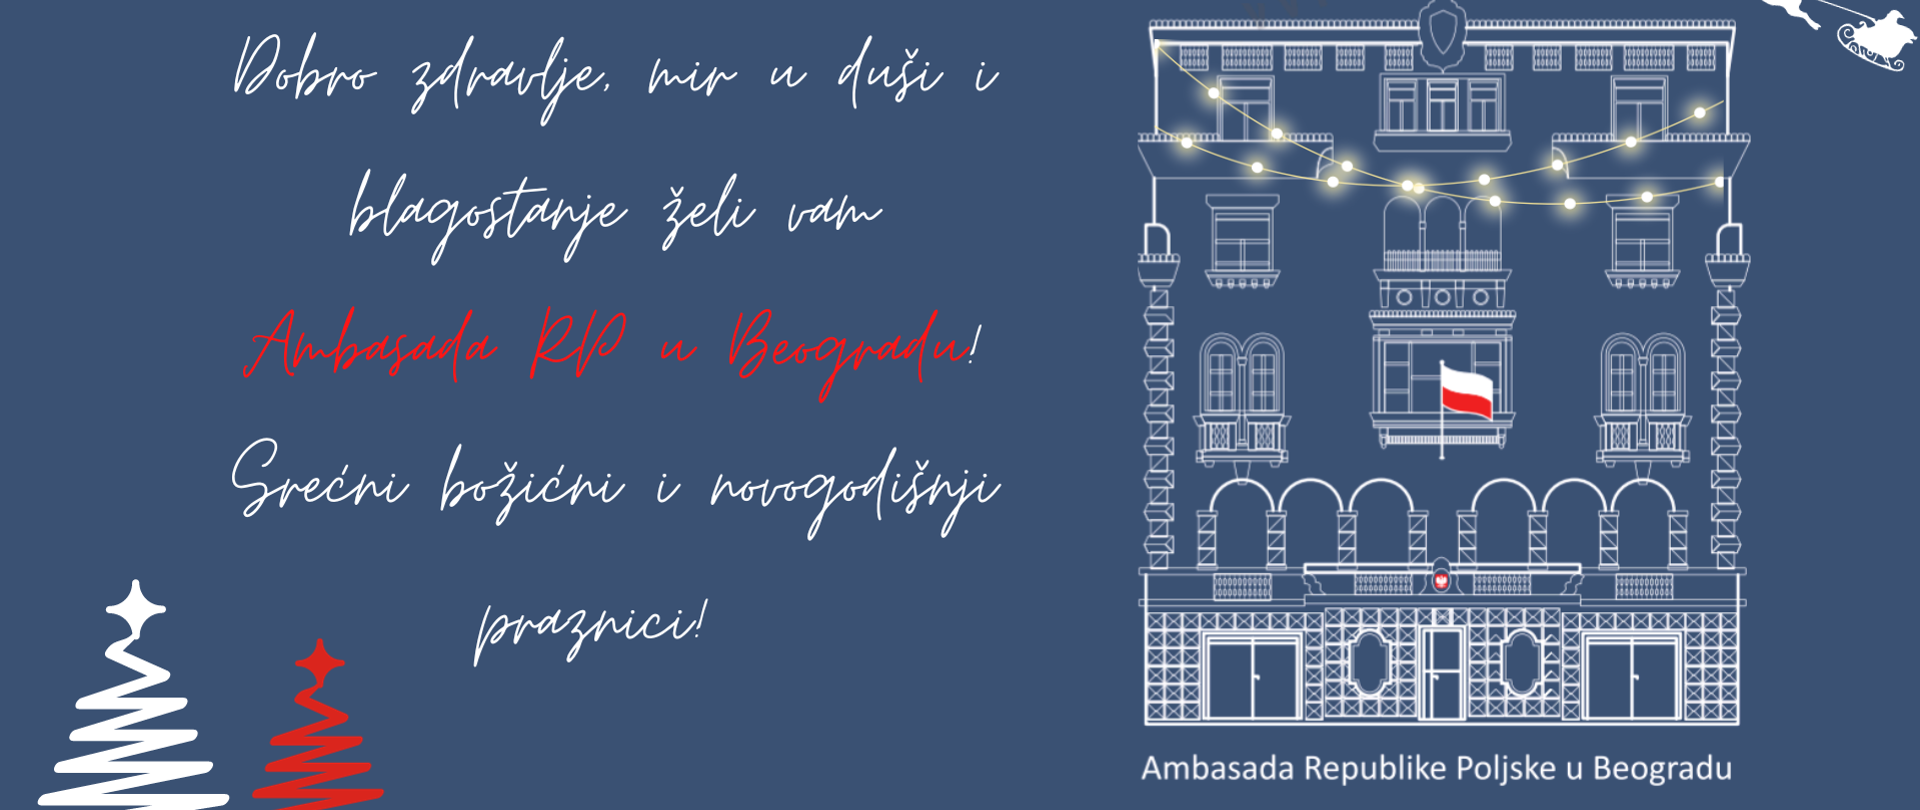 Z okazji Świąt Bożego Narodzenia oraz nadchodzącego Nowego Roku 2024 zespół Ambasady RP w Belgradzie składa wszystkim najlepsze życzenia zdrowia, spokoju oraz realizacji wszystkich planów zawodowych i osobistych. 